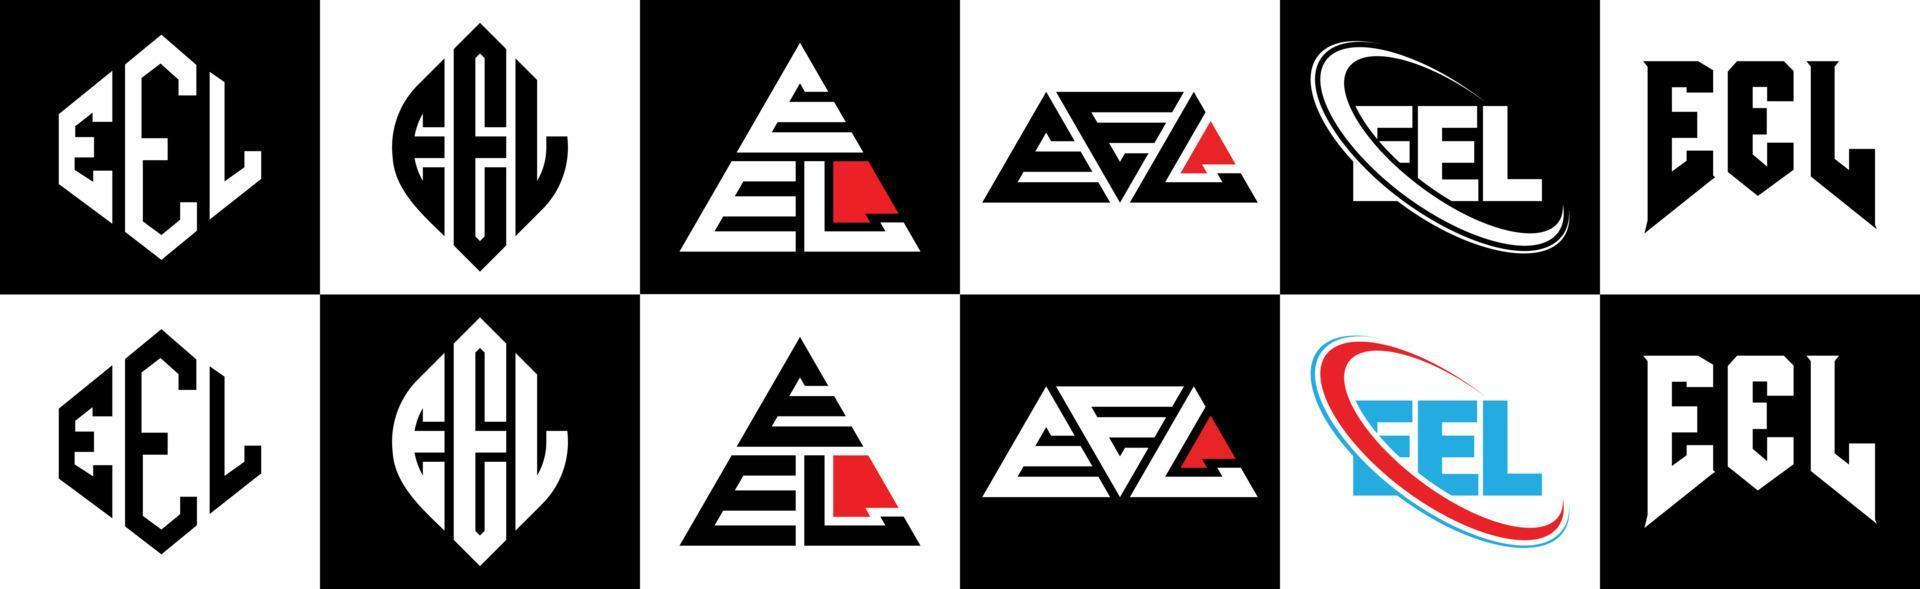 Aal-Buchstaben-Logo-Design in sechs Stilen. aalpolygon, kreis, dreieck, sechseck, flacher und einfacher stil mit schwarz-weißem buchstabenlogo in einer zeichenfläche. Aal minimalistisches und klassisches Logo vektor